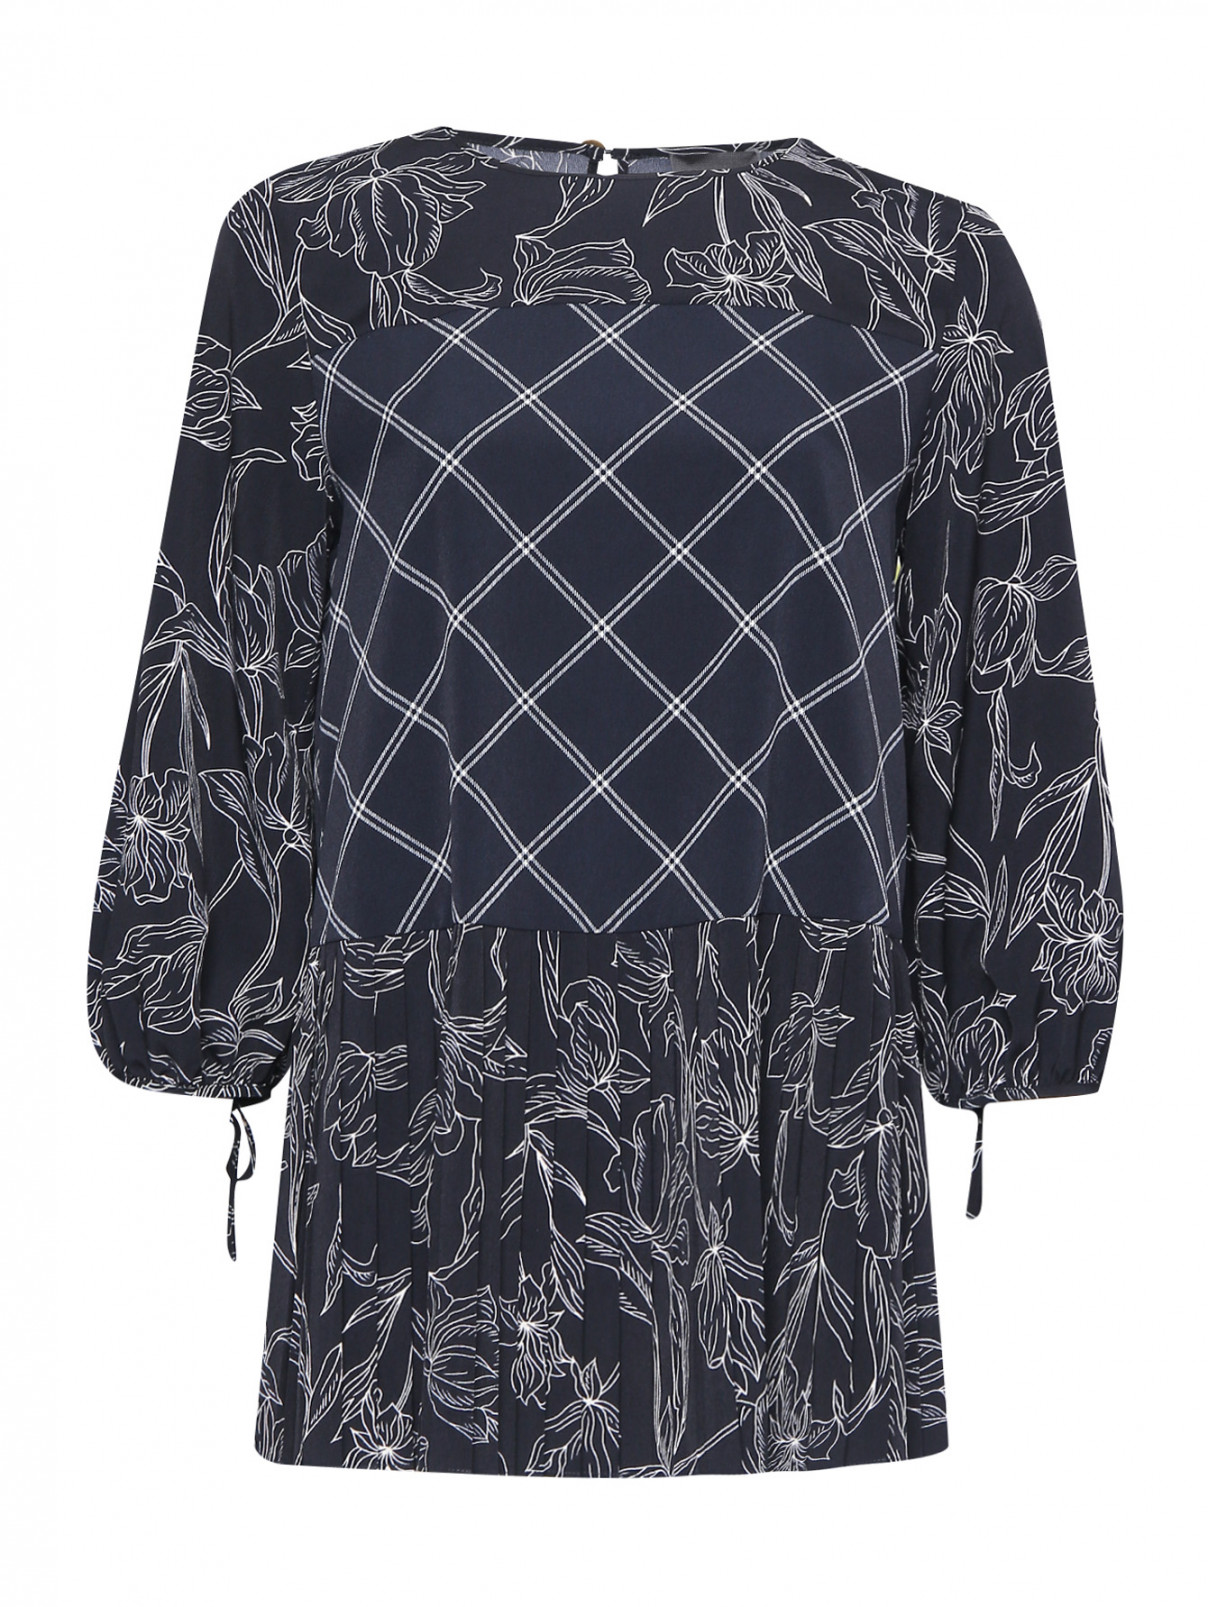 Блуза свободного кроя с узором Persona by Marina Rinaldi  –  Общий вид  – Цвет:  Черный